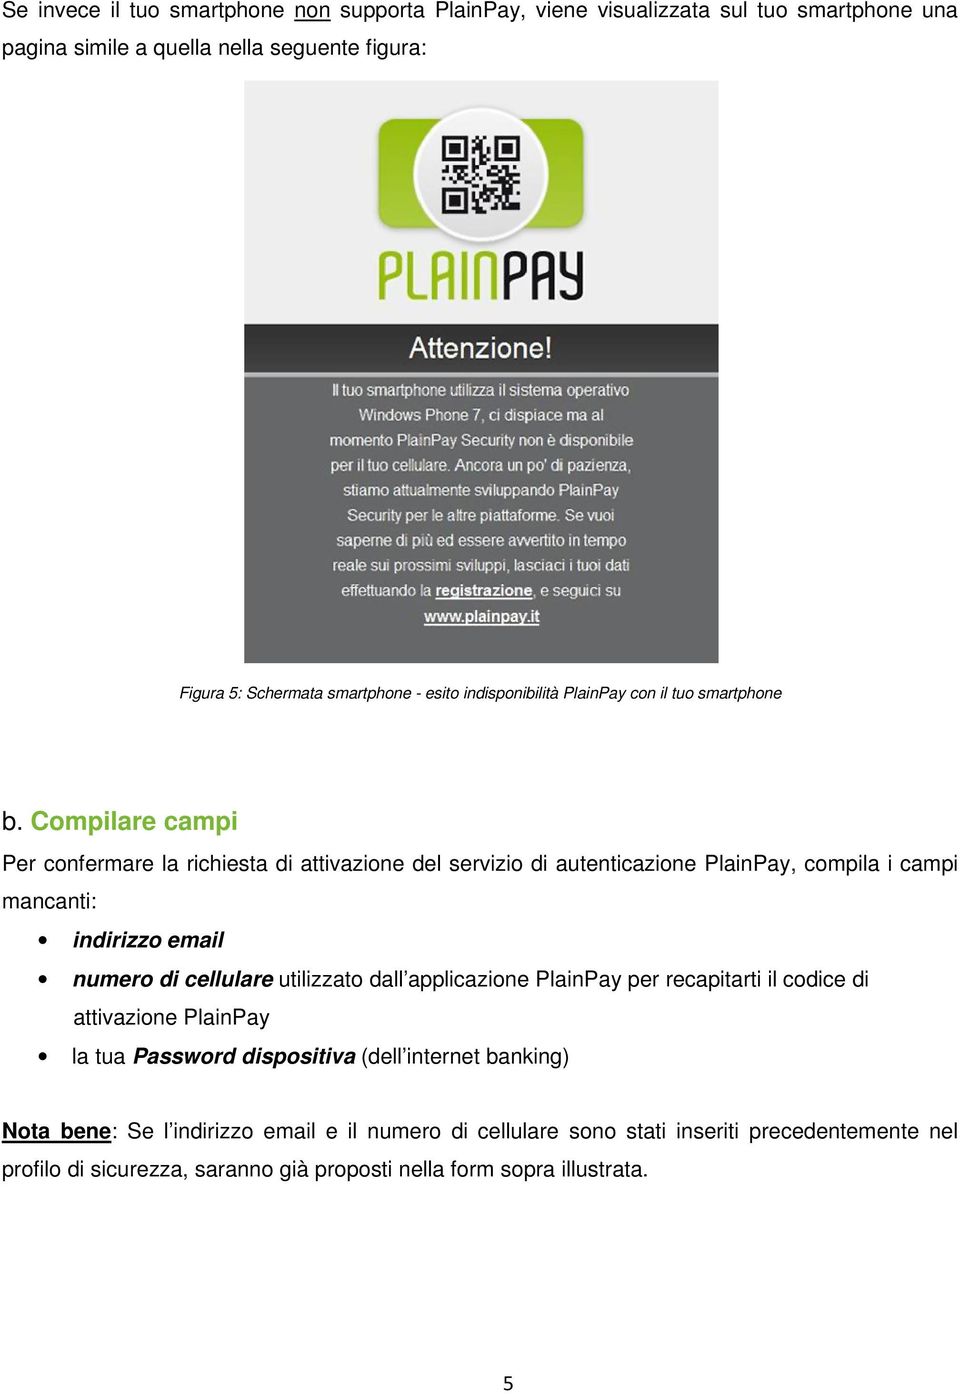 Compilare campi Per confermare la richiesta di attivazione del servizio di autenticazione PlainPay, compila i campi mancanti: indirizzo email numero di cellulare utilizzato